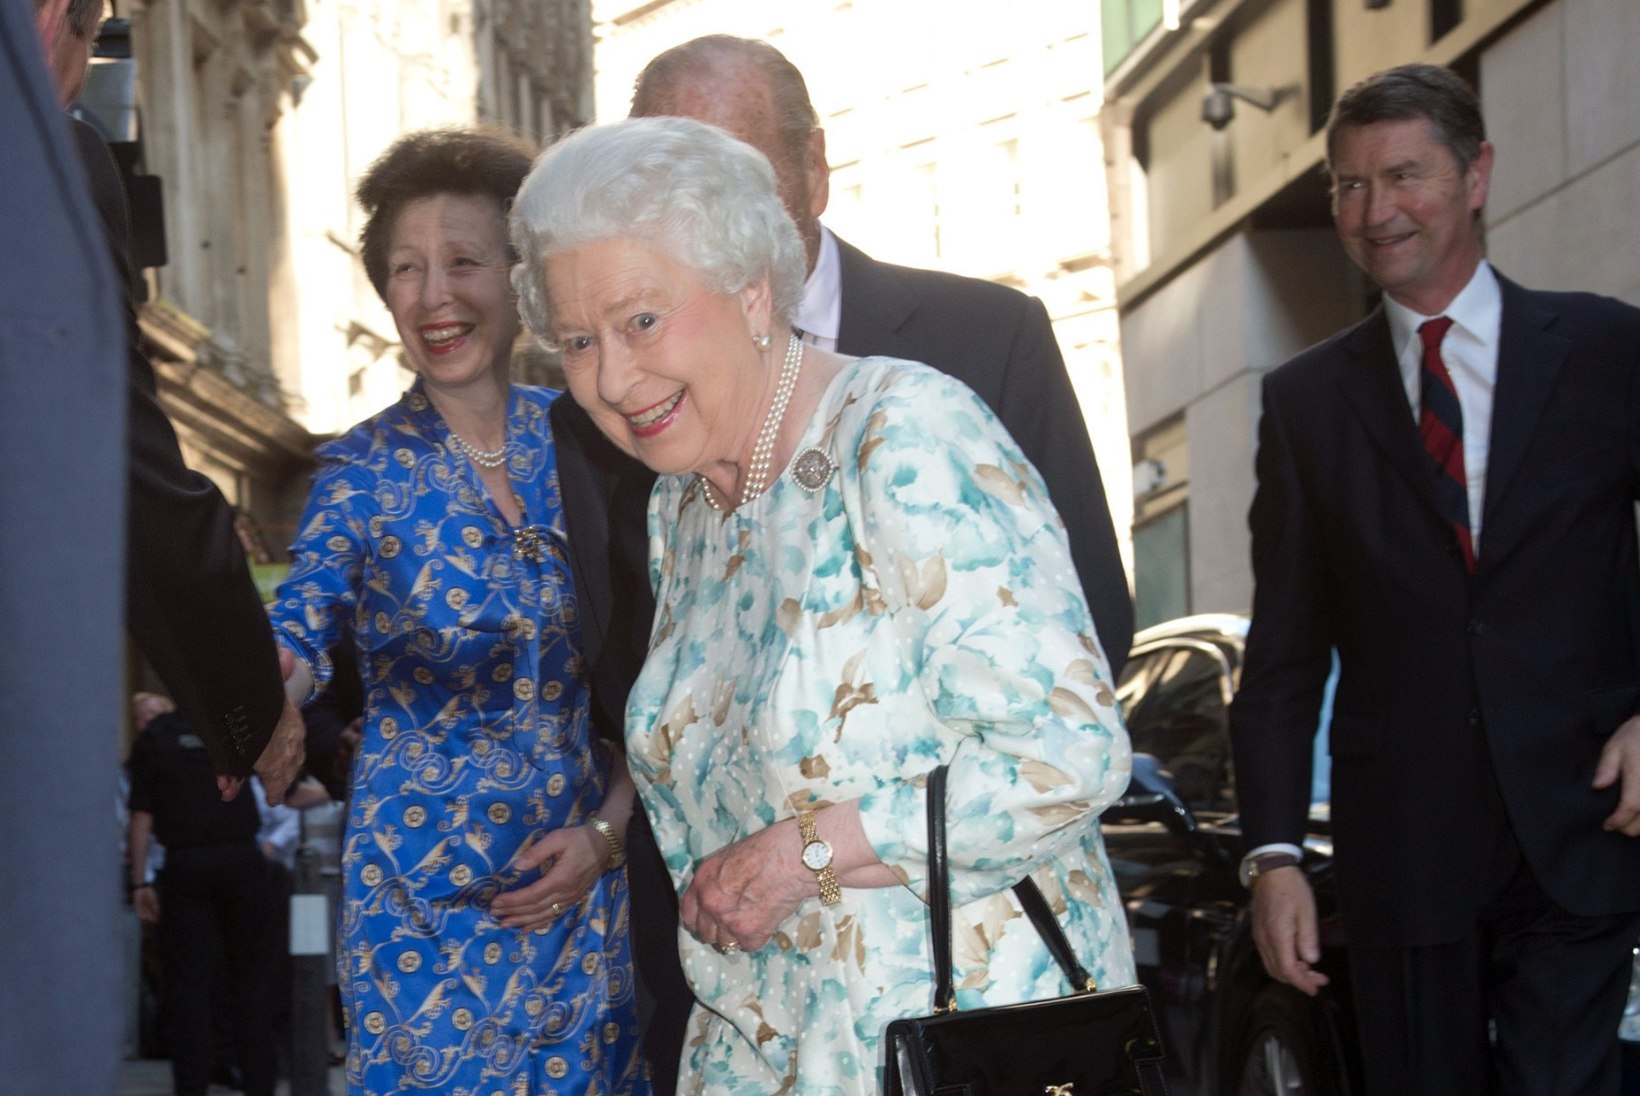 Kuninganna Elizabeth II privaatne sünnipäevapidu